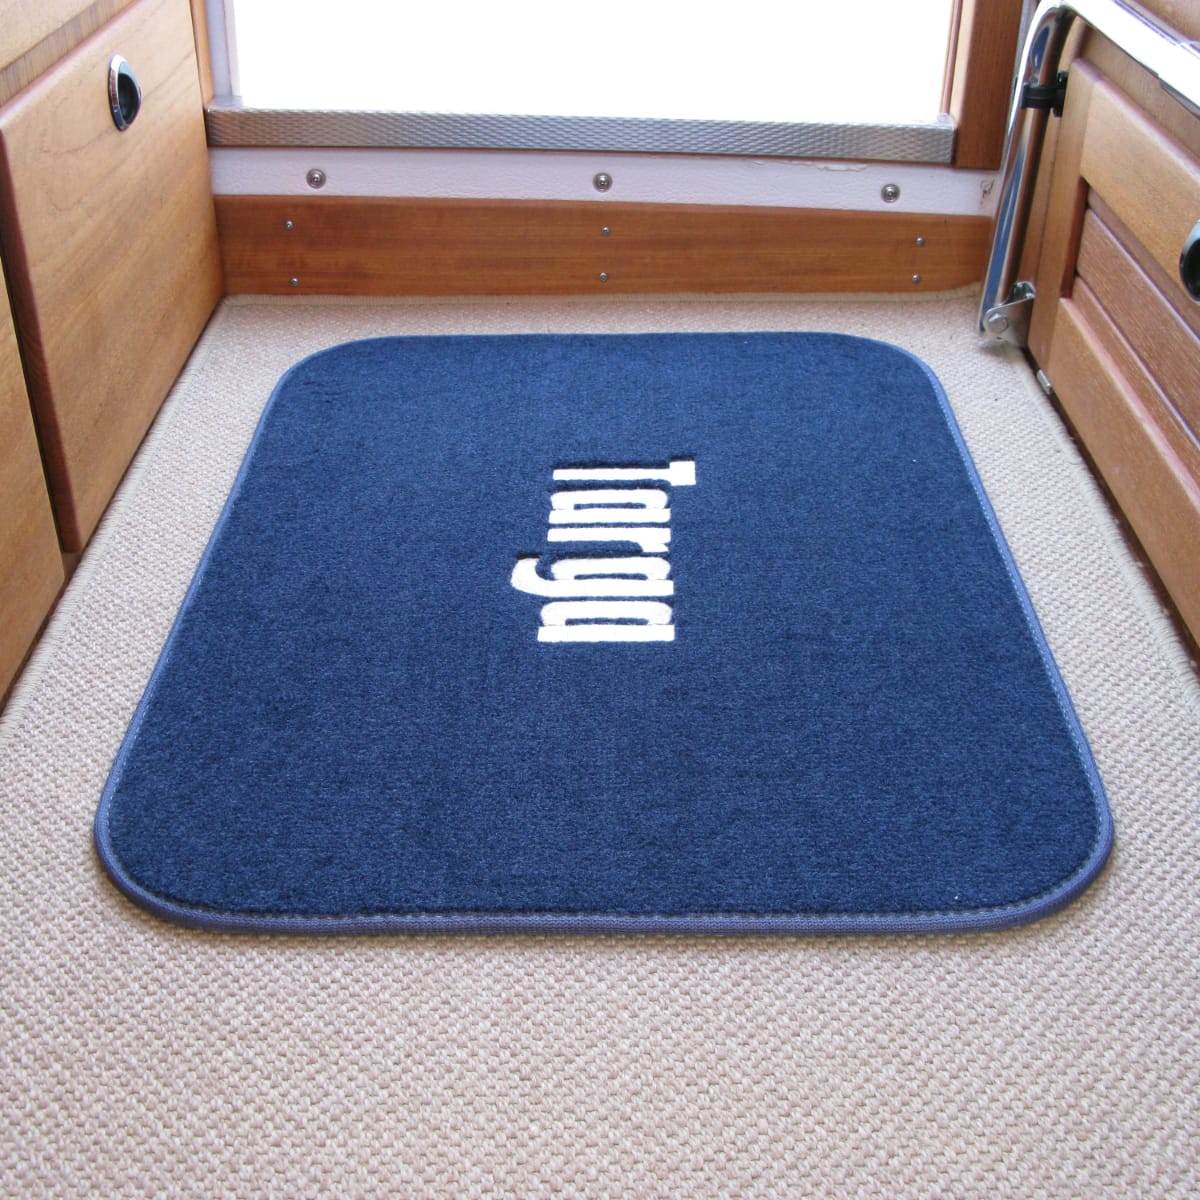 The Targa door mat with anti-slip base